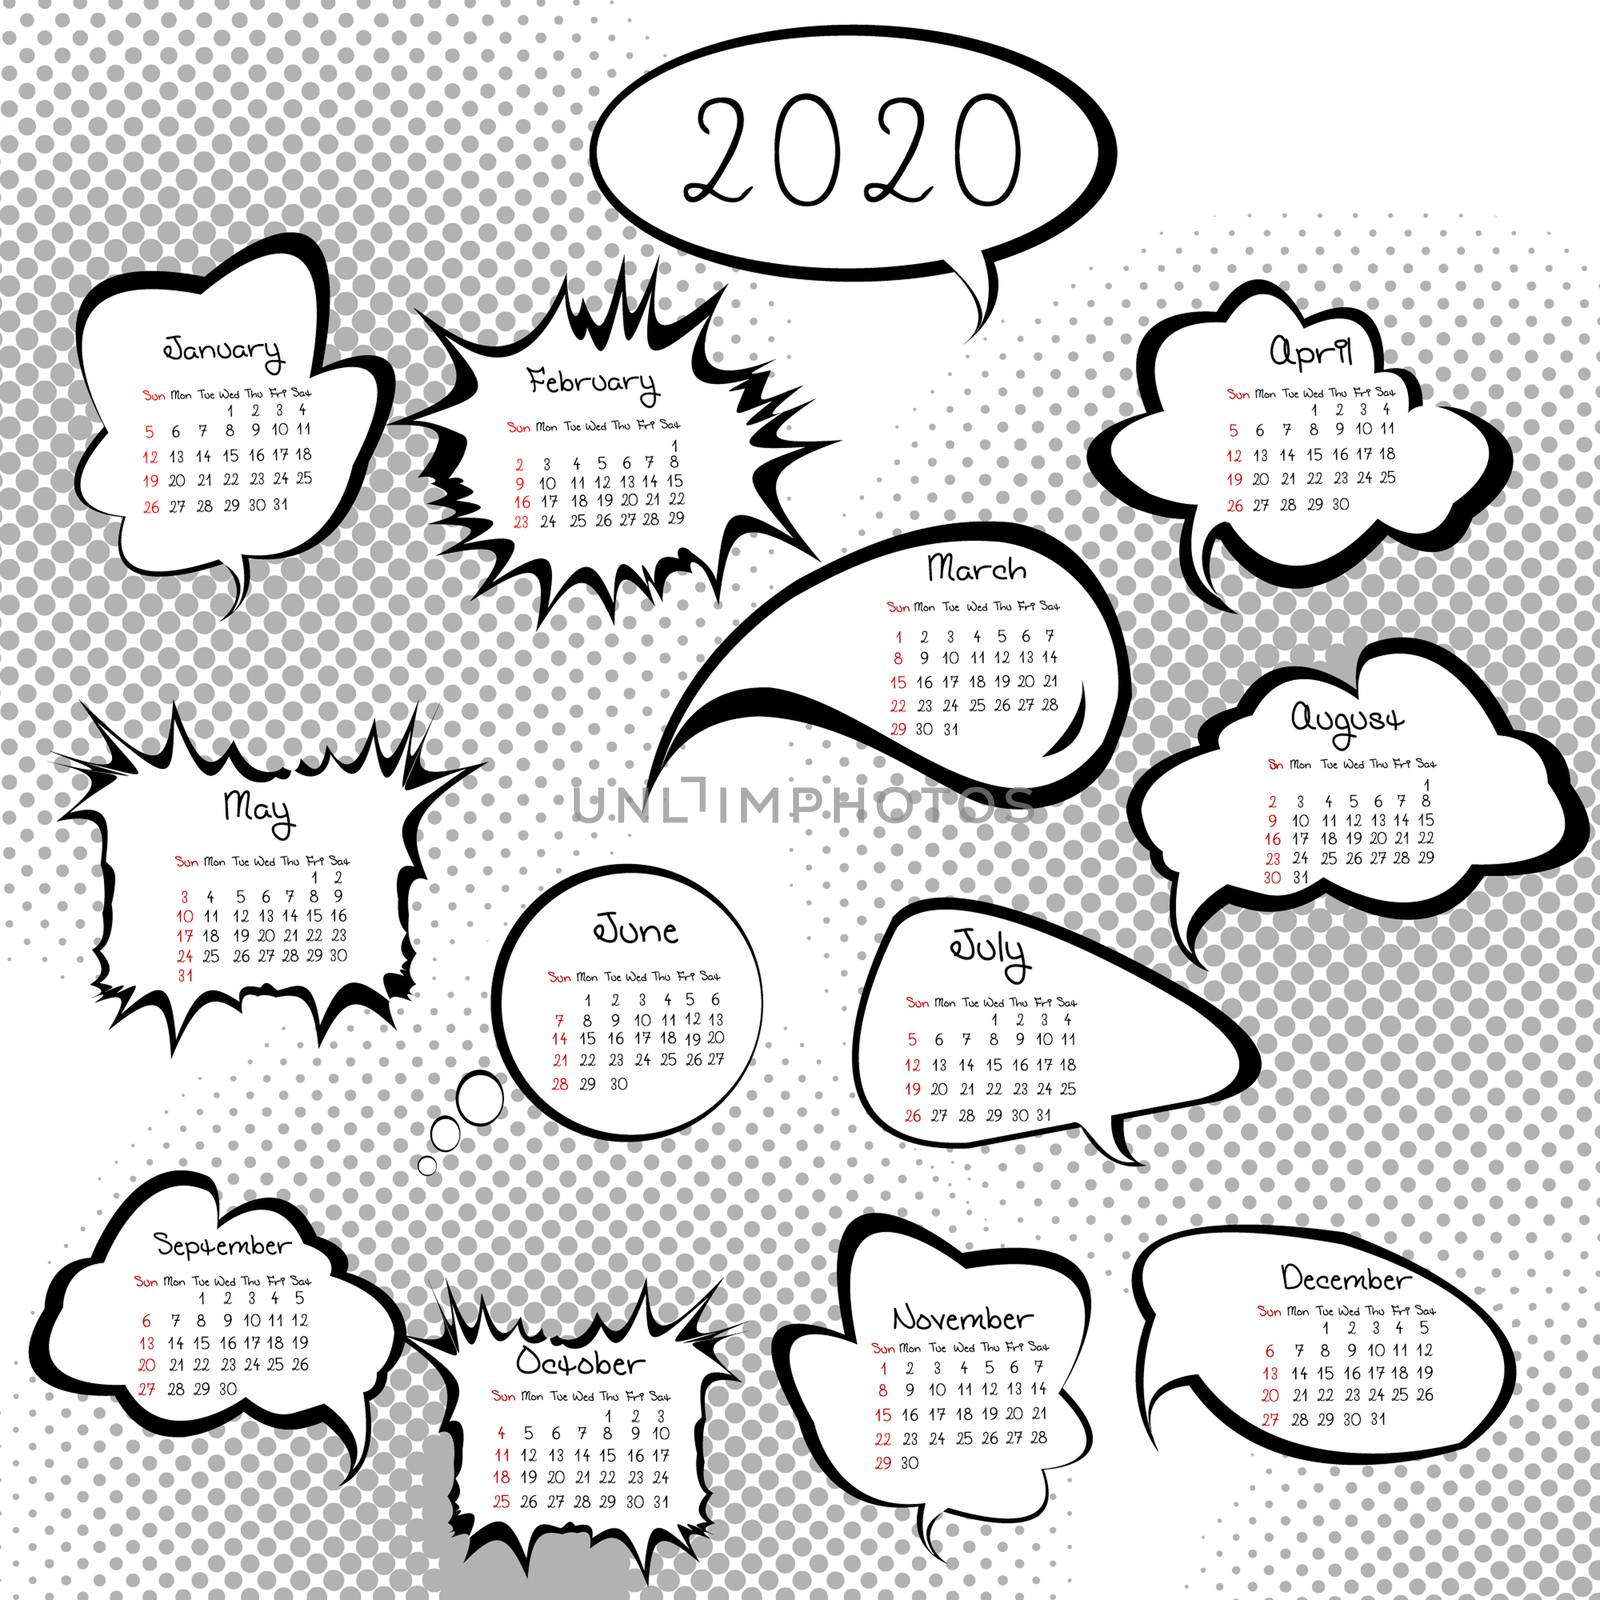 2020 calendar with speech bubbles